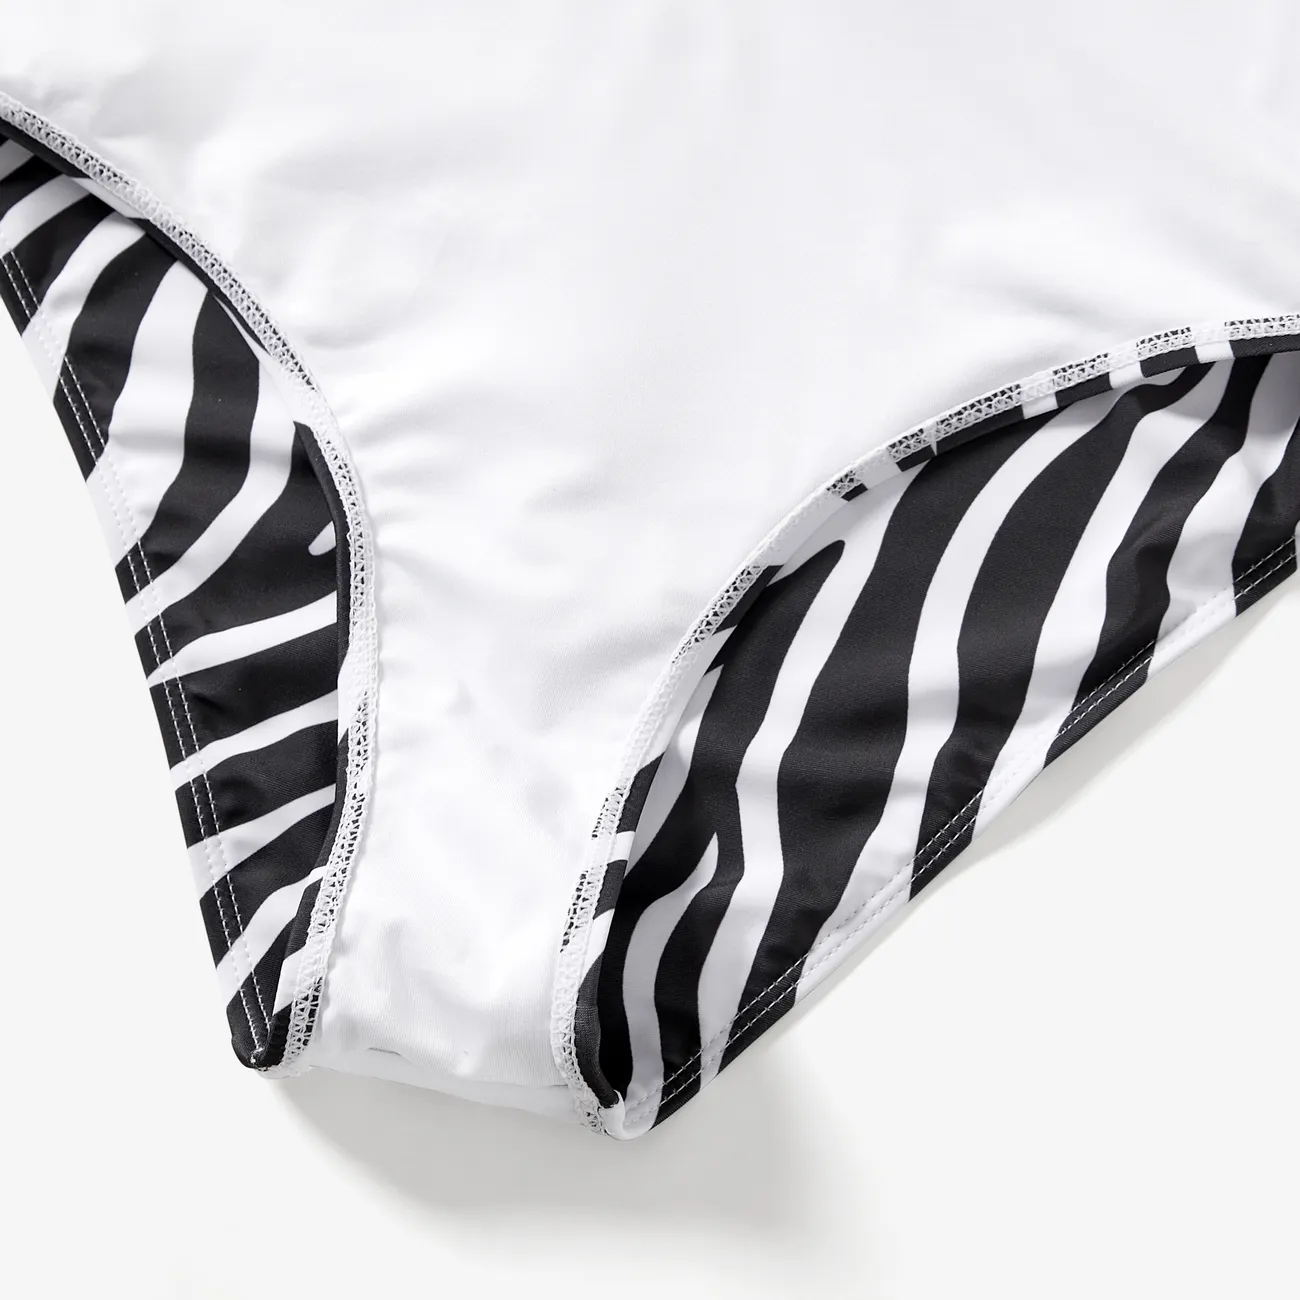 ملابس السباحة إطلالة العائلة للجنسين شريط دانتيل نقش حيوانات أسود / أبيض big image 1